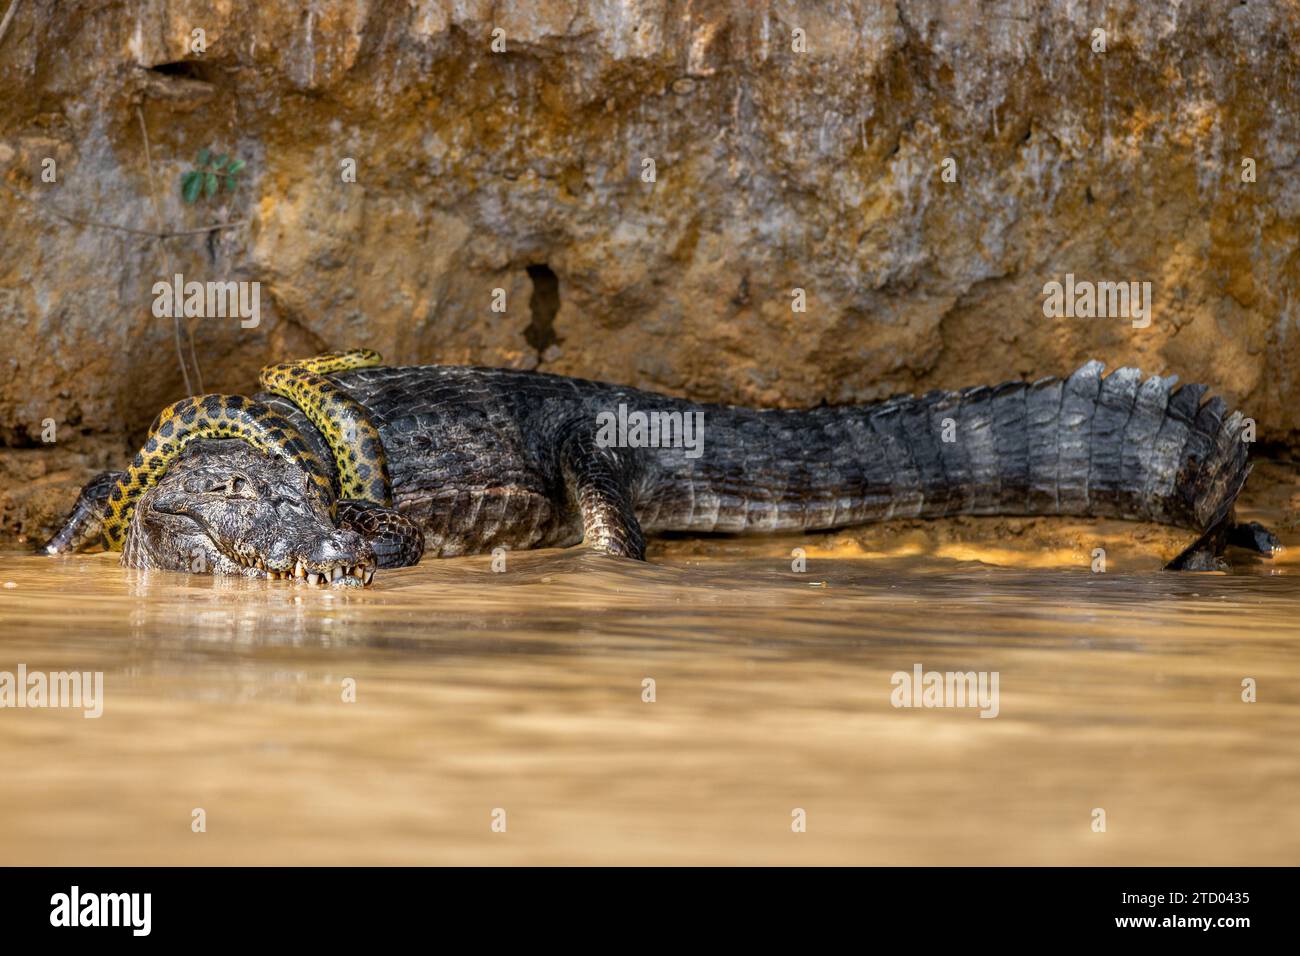 Anaconda um den Alligator BRASILIEN gewickelt SPANNENDE Bilder zeigen einen Kaiman-Alligator, der eine gelbe Anaconda wie eine Krawatte trägt. Der 1,2 m lange ANAC Stockfoto